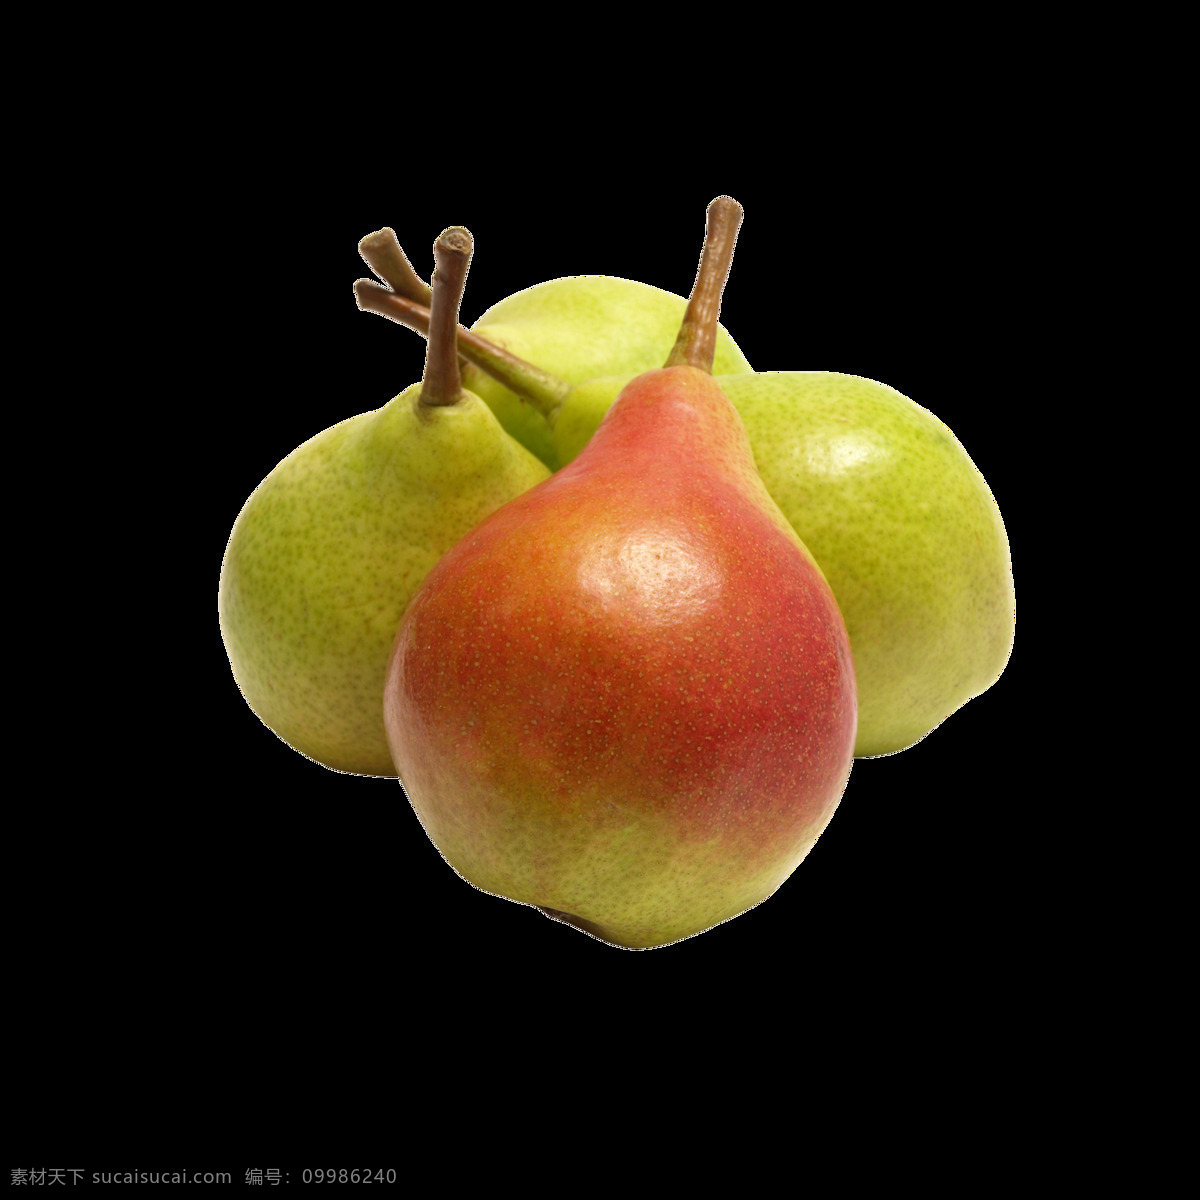 脆 梨 透明 水果 脆梨 装饰 抠图专用 设计素材 背景素材